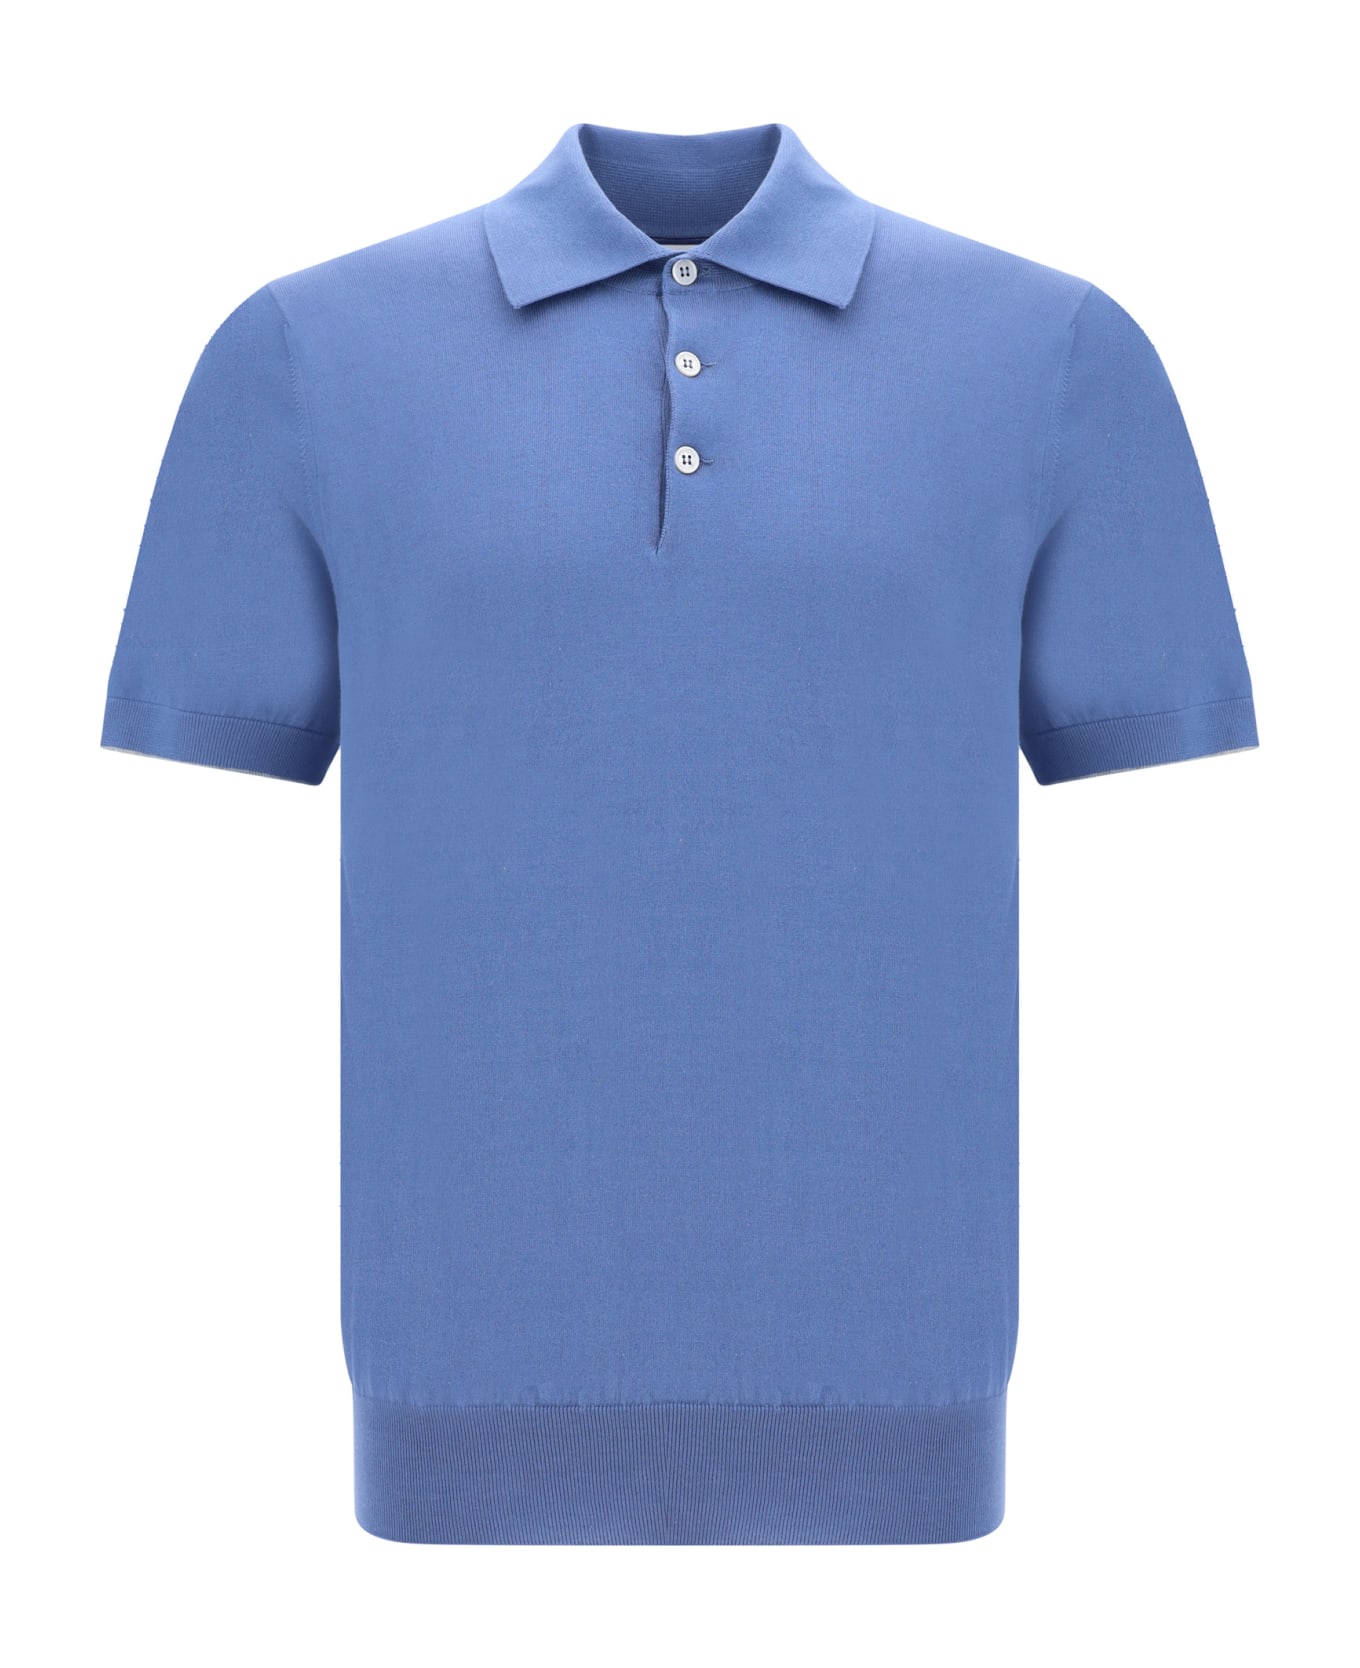 Brunello Cucinelli Polo Shirt - Oxford+grigio Chiaro